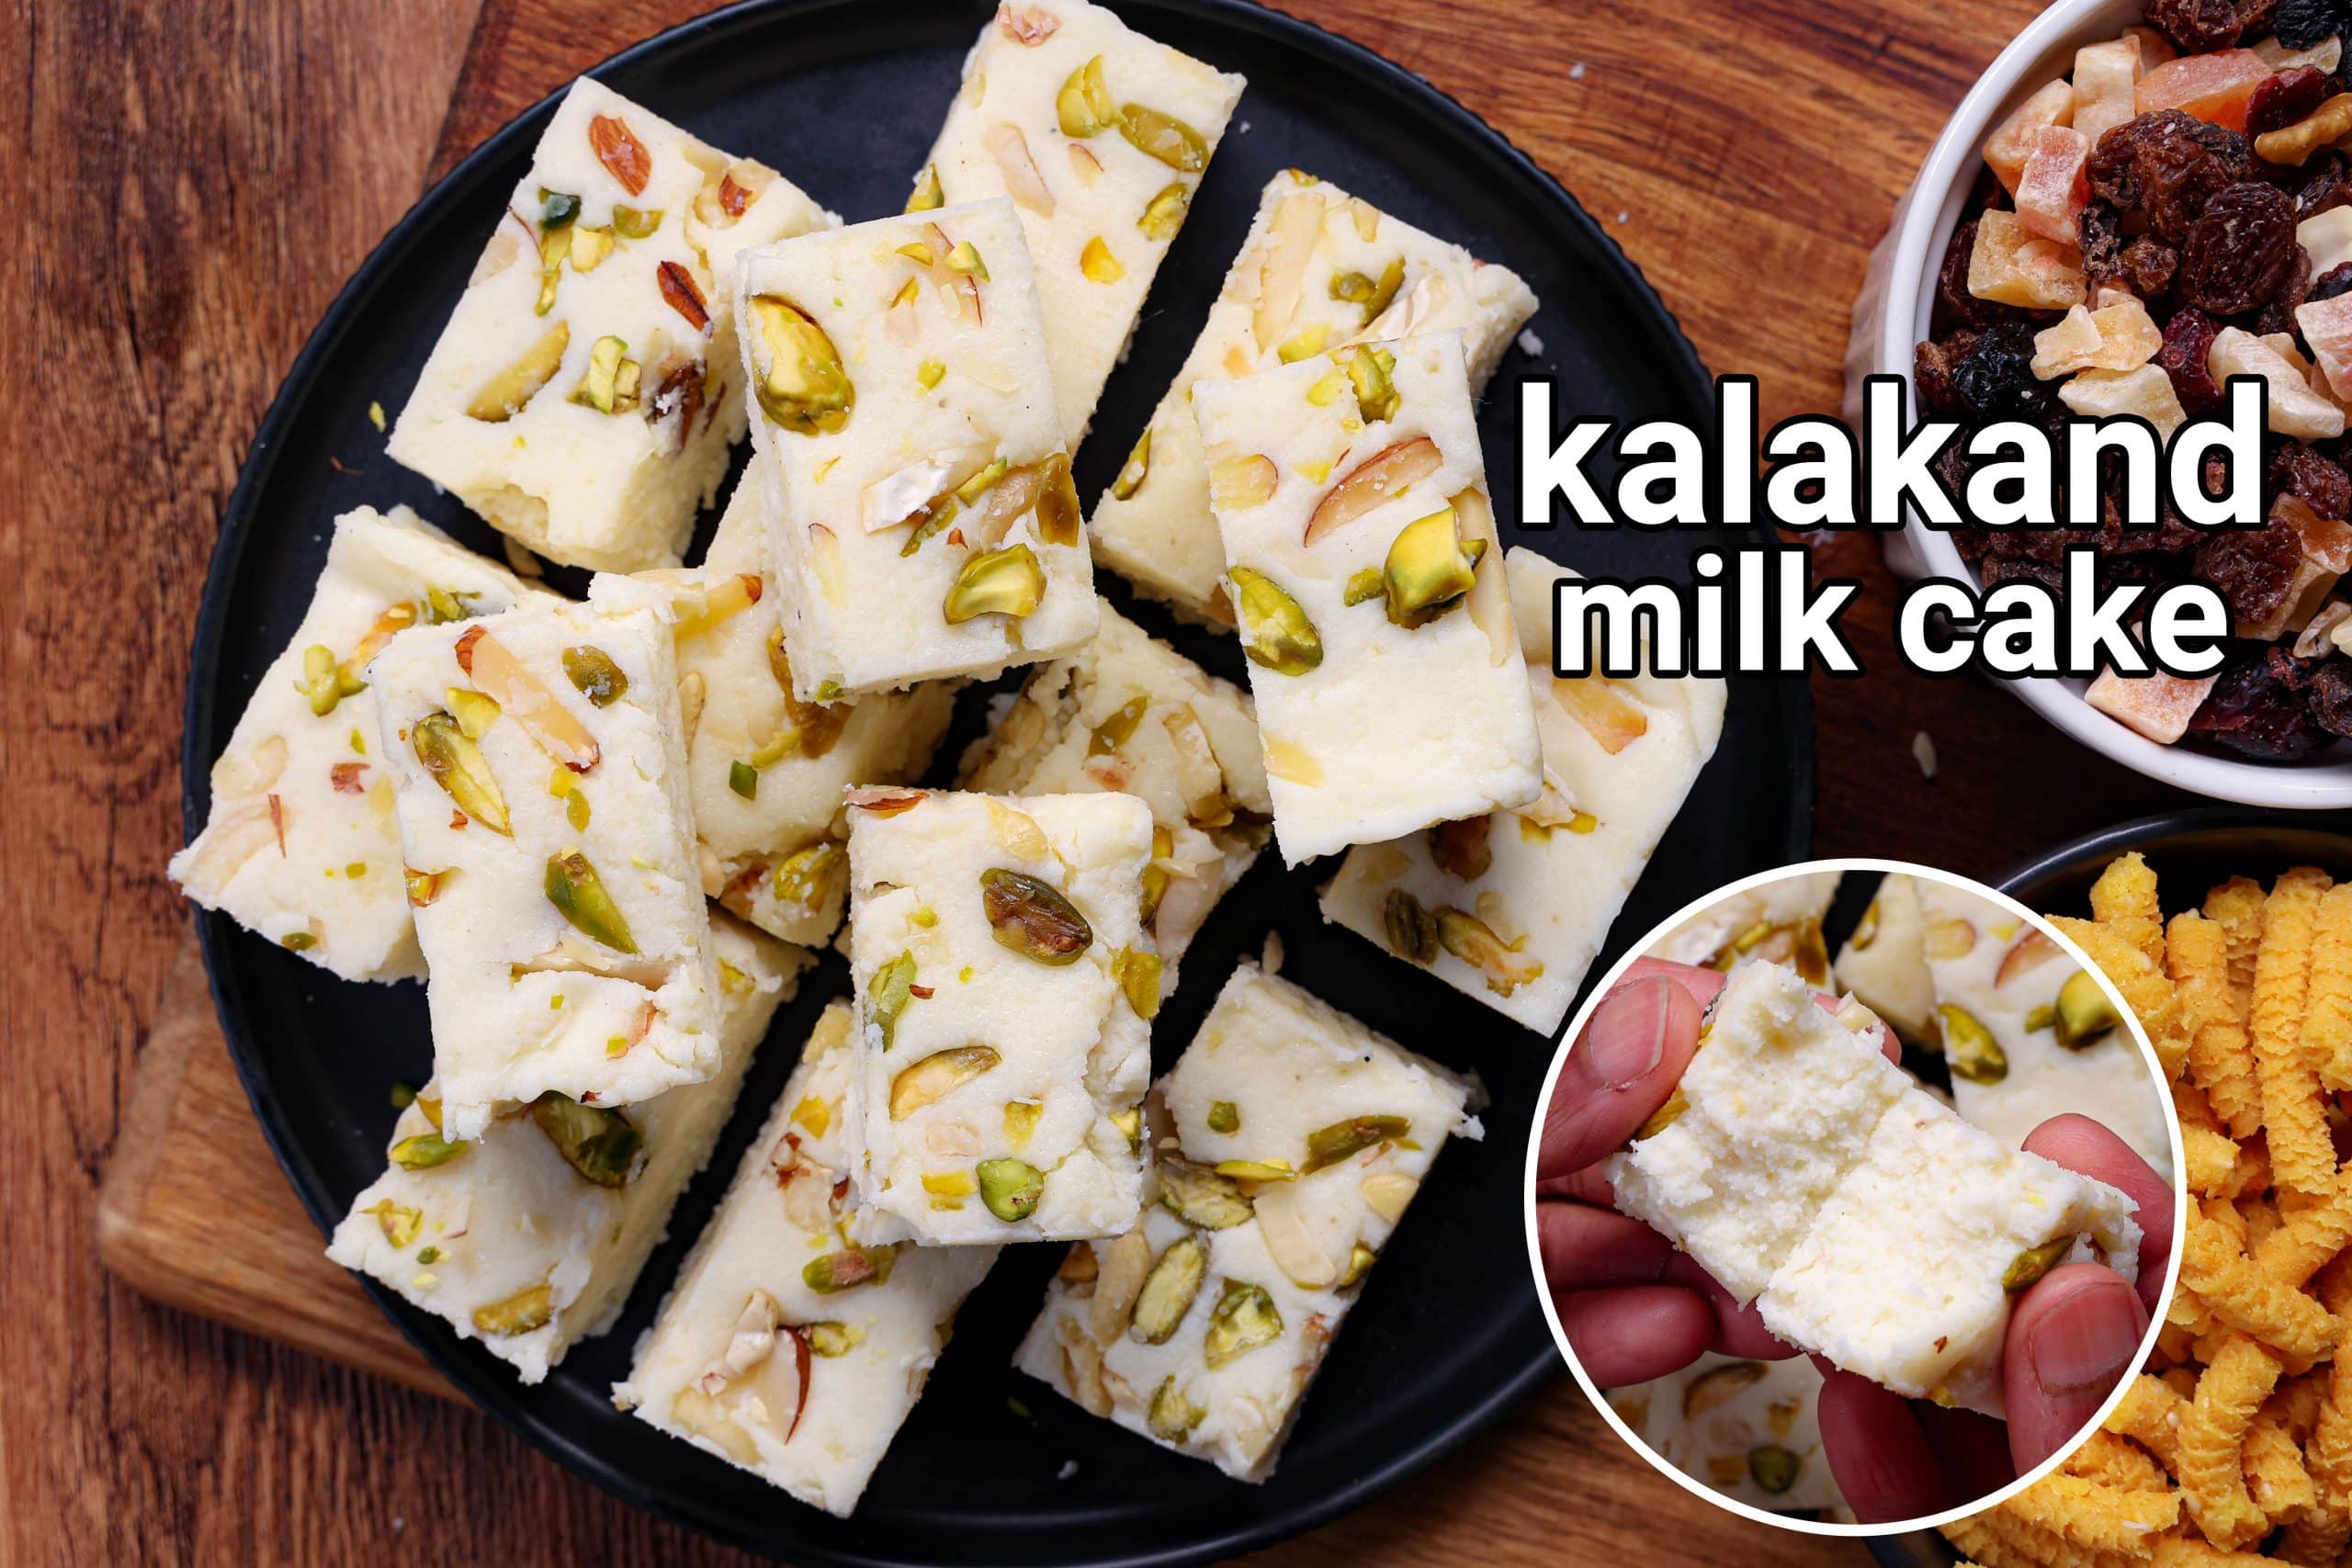 Kalakand, No, Milk Cake, No, Kalakand in Alwar | The Young Bigmouth